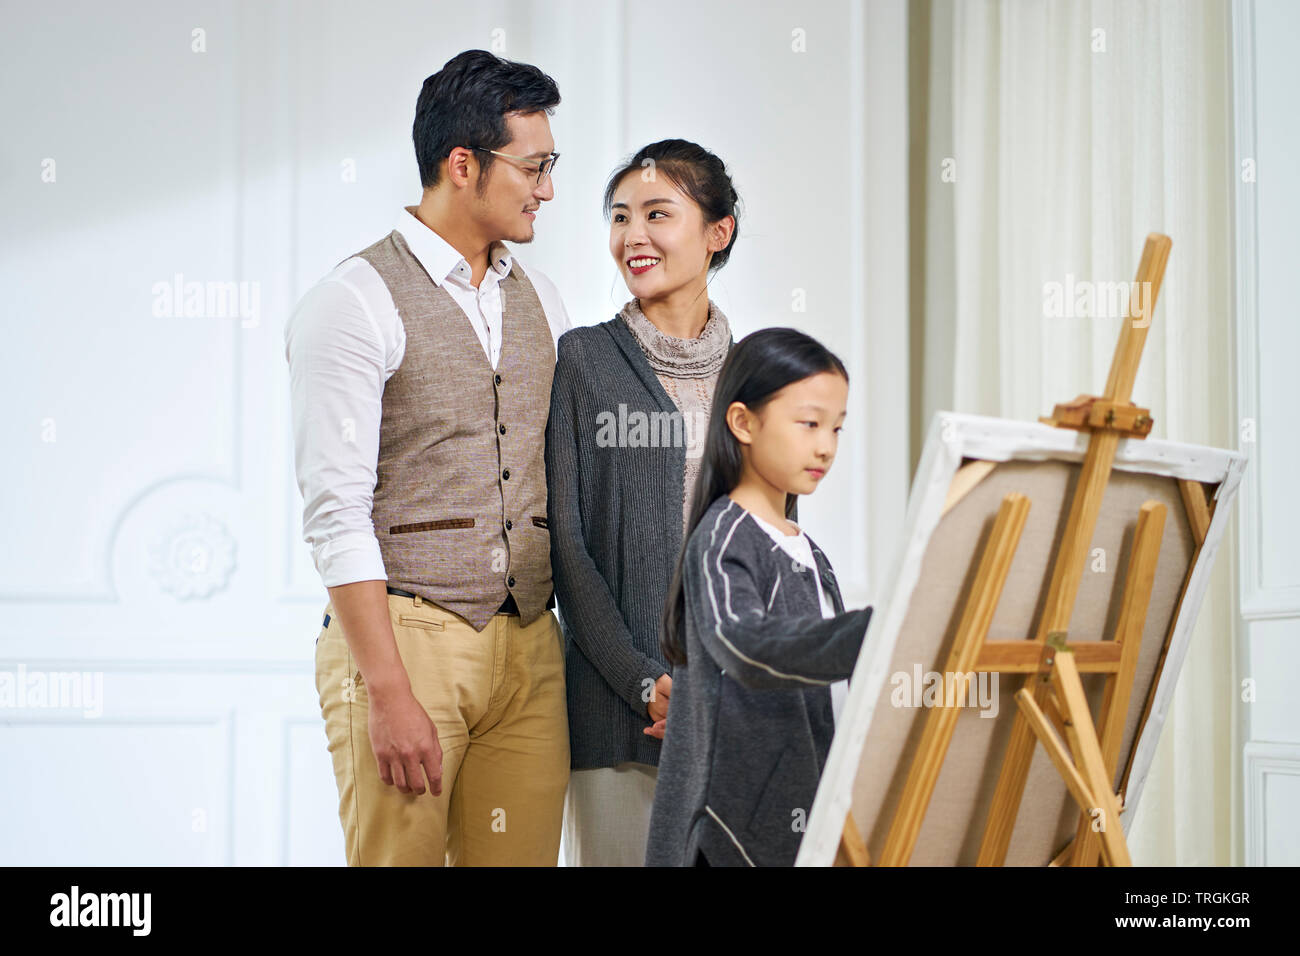 Schöne kleine asiatische Mädchen mit langen schwarzen Haaren und einem Gemälde auf Leinwand, während die Eltern stehen hinter beobachten, auf die Eltern konzentrieren. Stockfoto